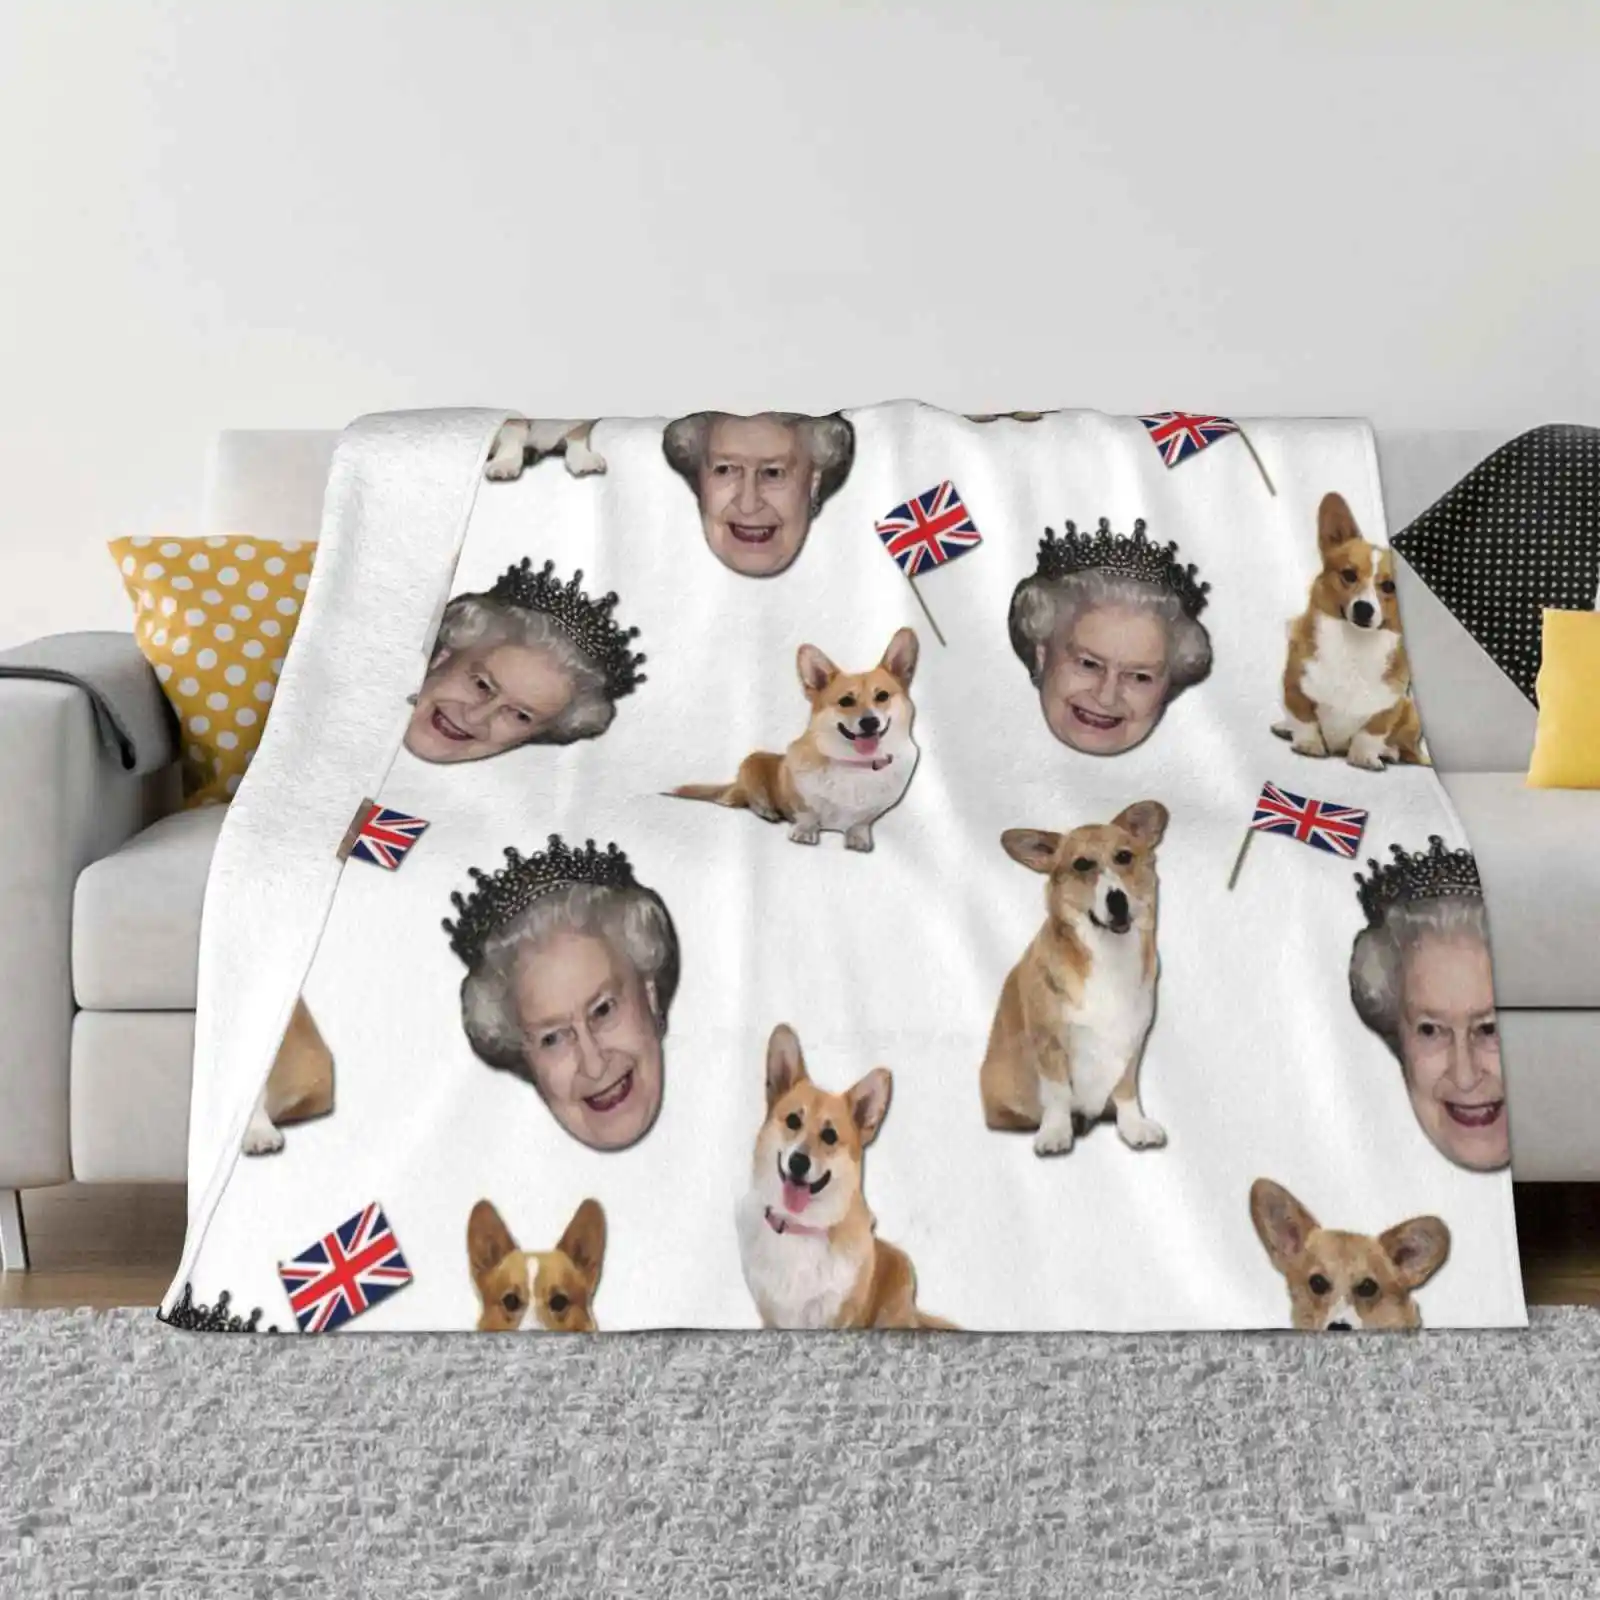 

Фланелевое Одеяло с рисунком королевы Елизаветы и корги, необычный дизайн, мягкое фланелевое одеяло для любимых собак